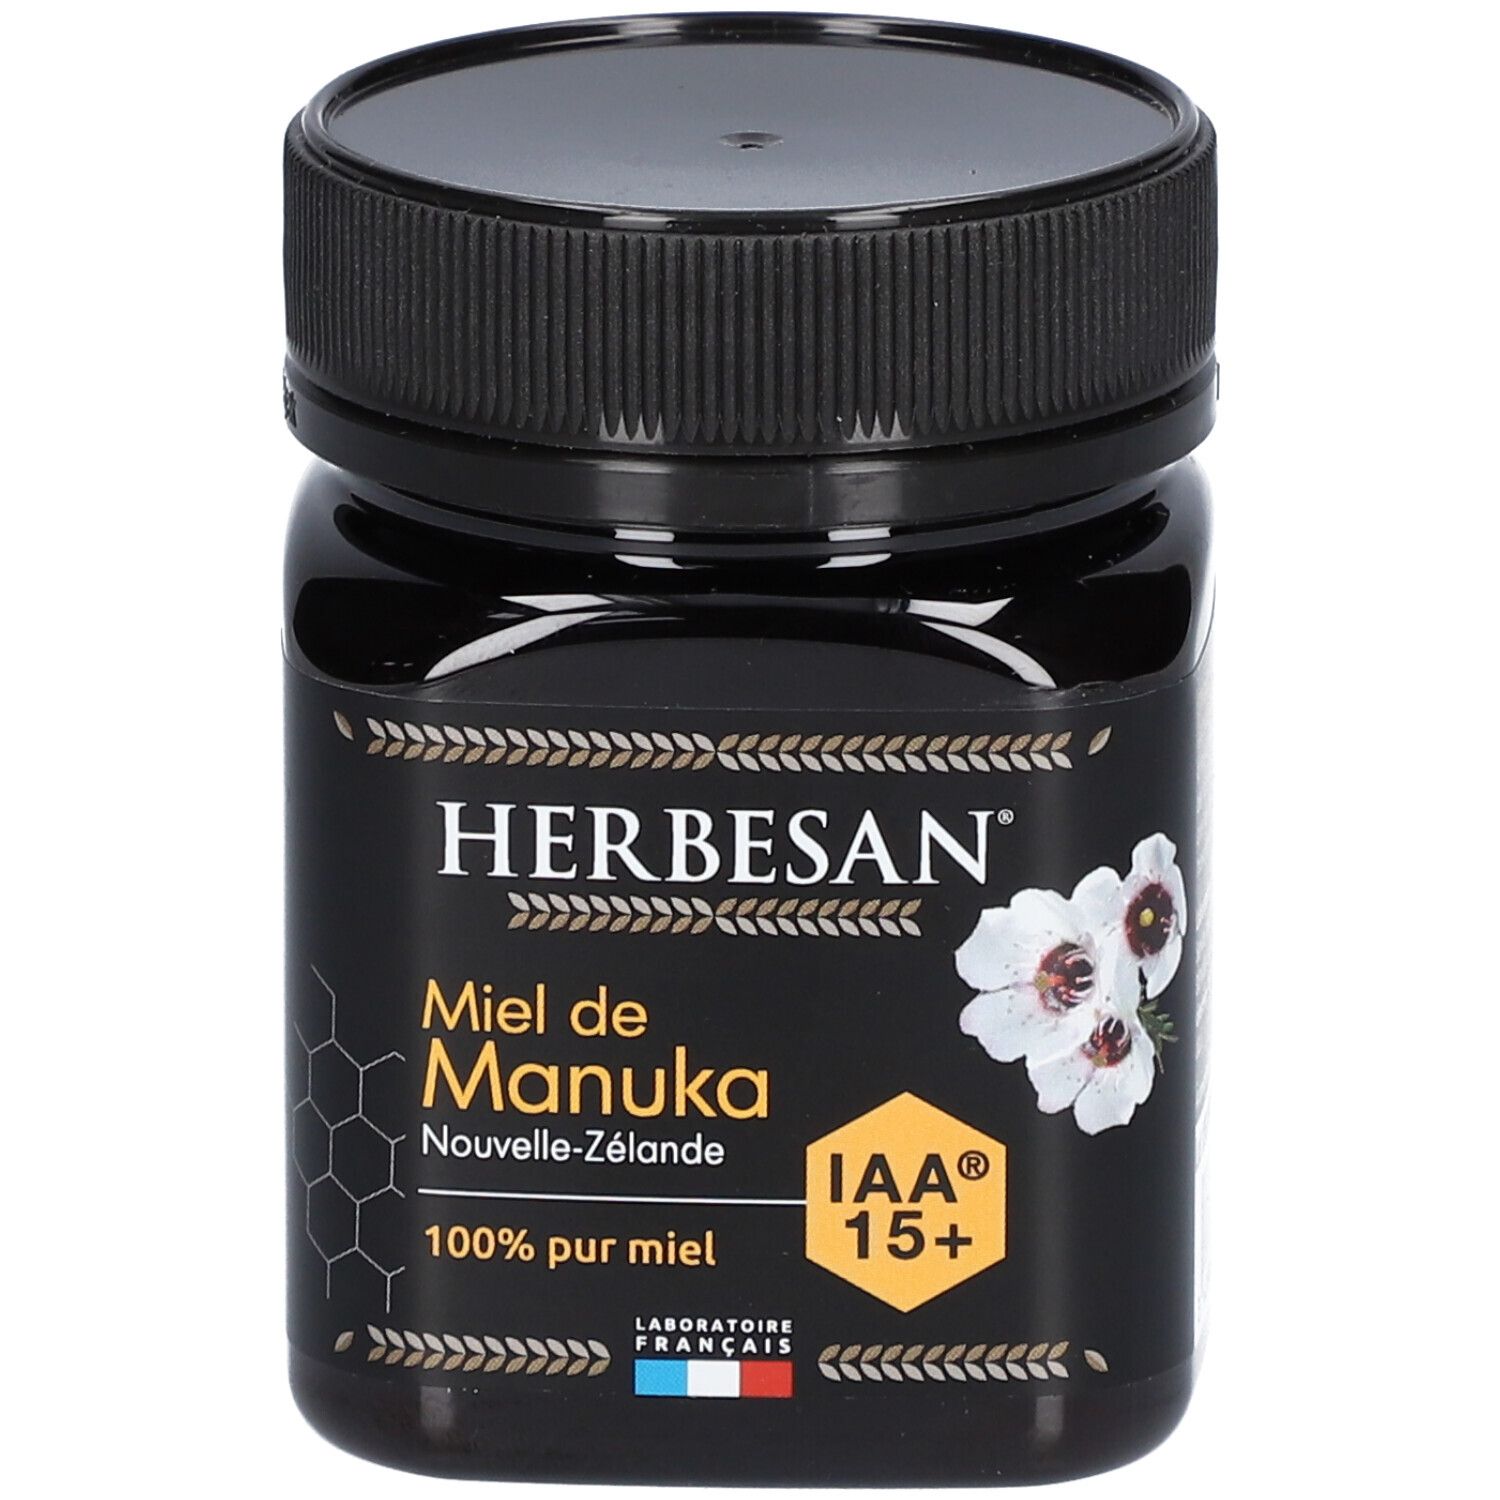 Herbesan® Miel de Manuka Iaa15+